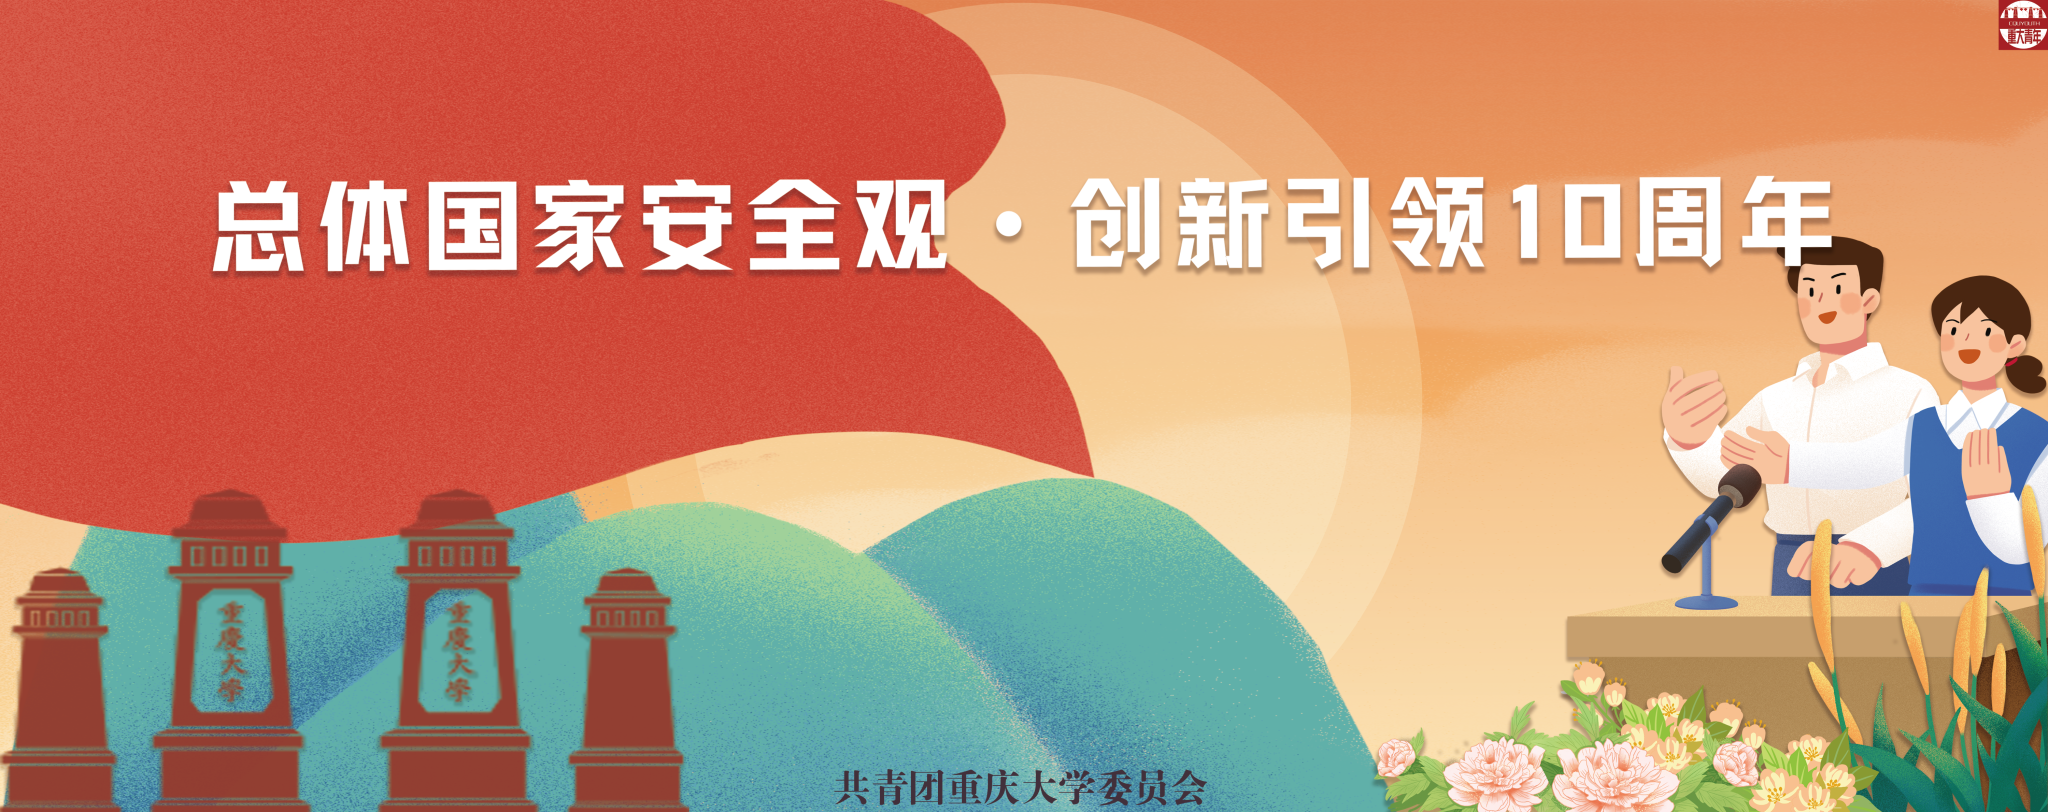 重庆大学第五届“红船杯”研究生学习新思想知识竞赛